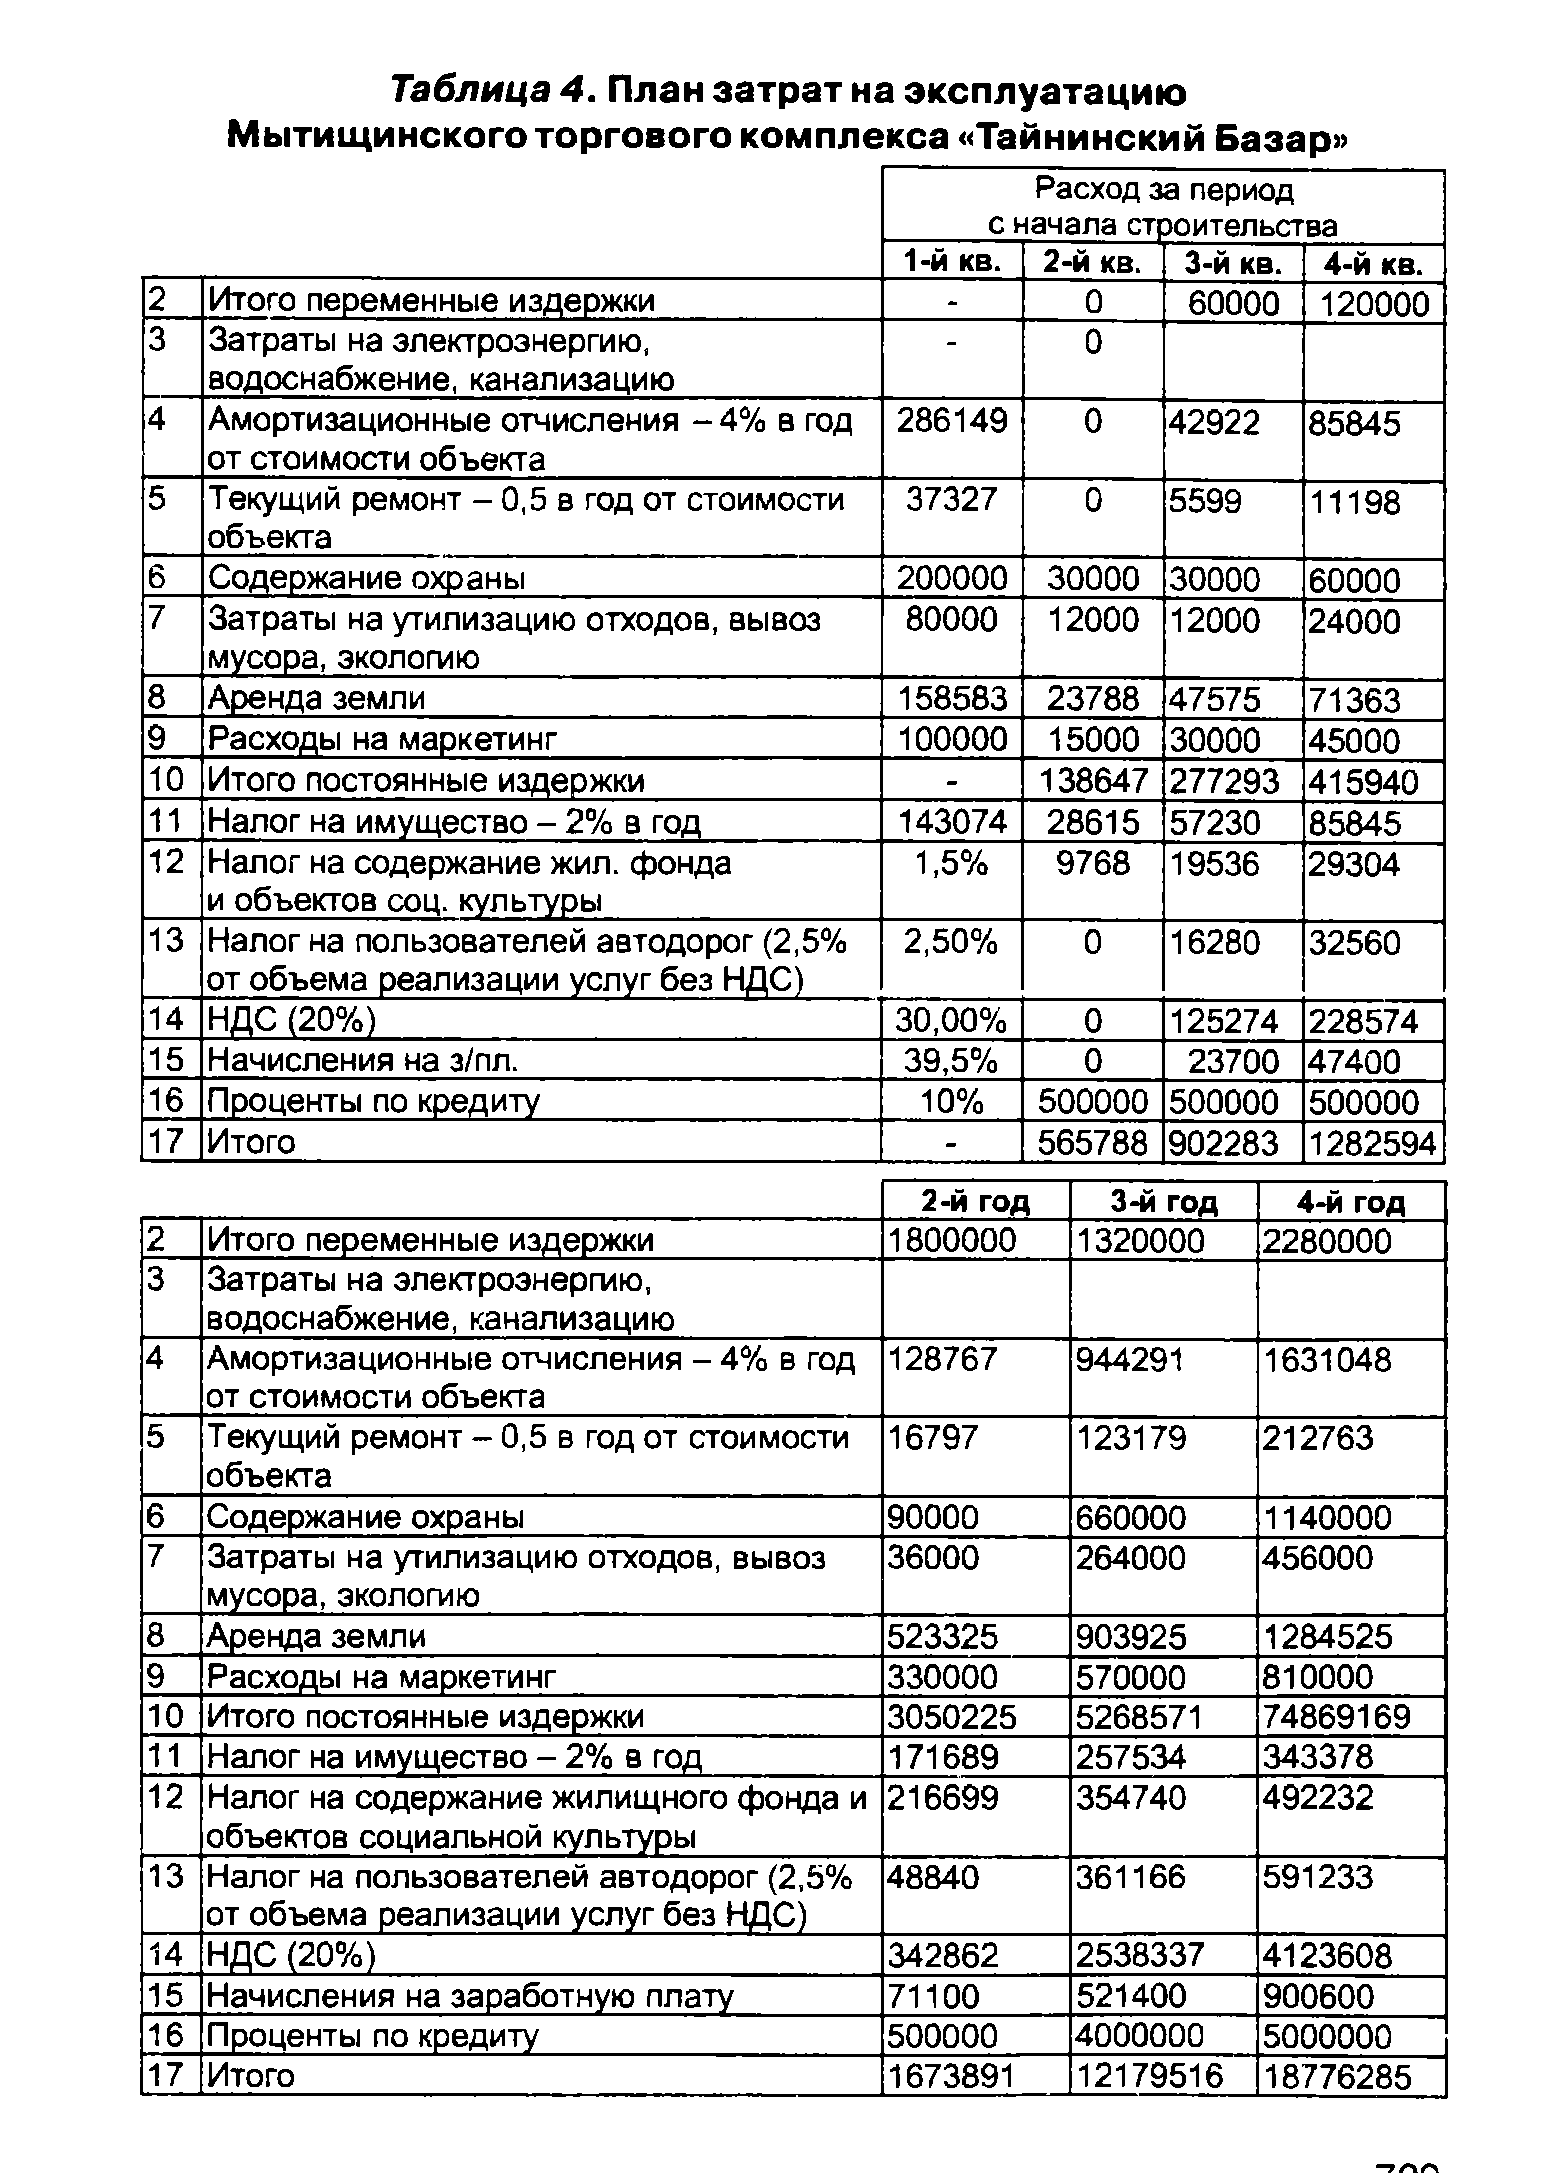 Таблица 4. План затрат на эксплуатацию Мытищинского торгового комплекса Тайнинский Базар 
